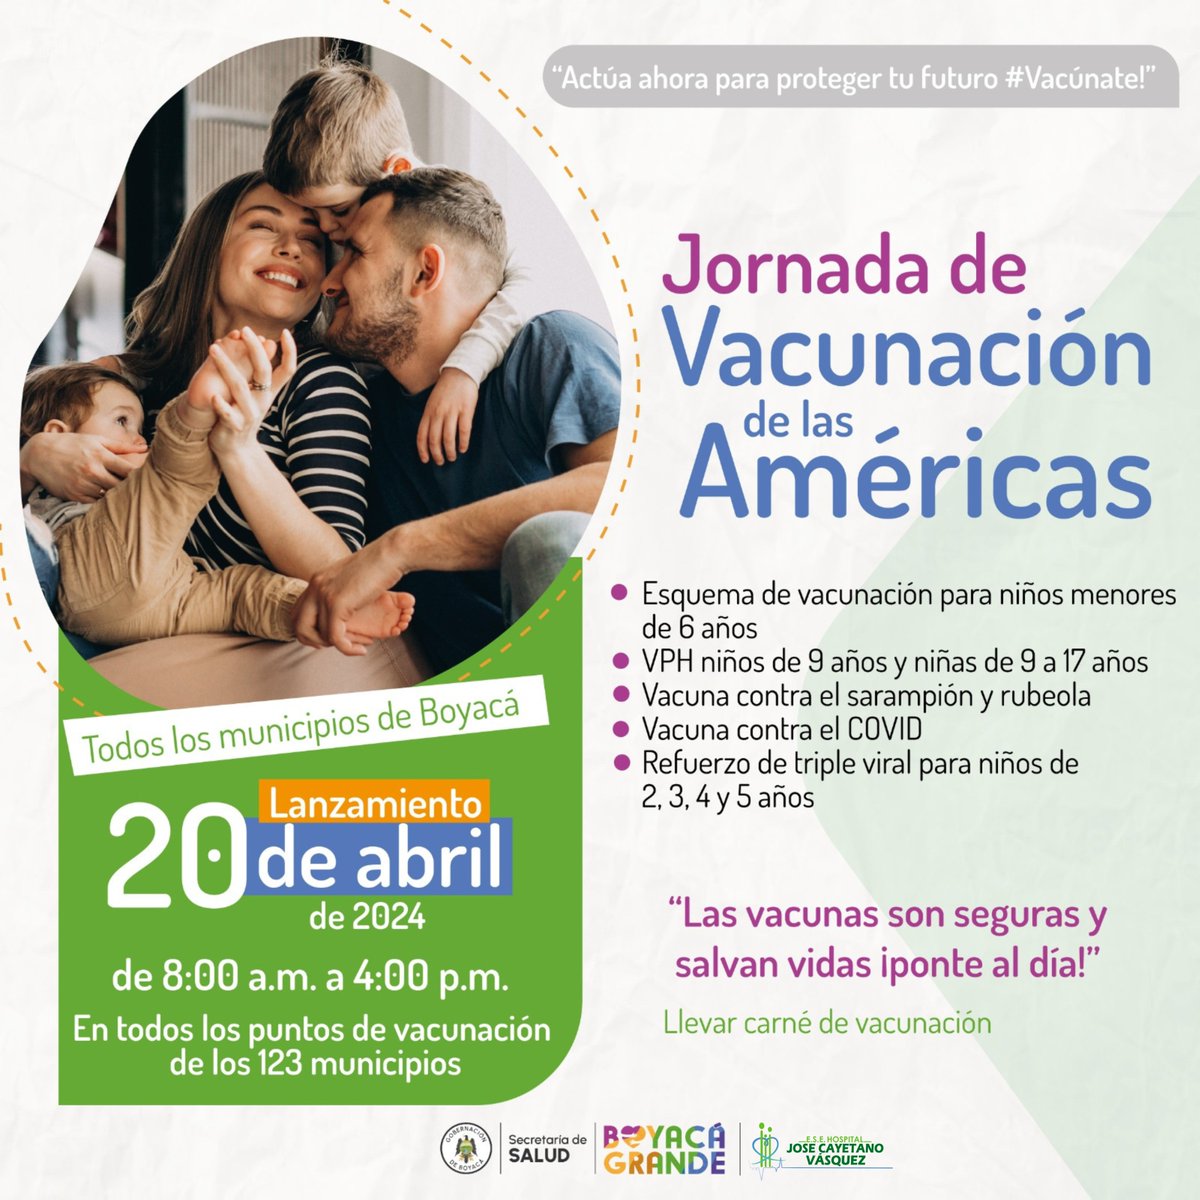 🏥📈💚 En la ESE Hospital José Cayetano Vásquez,nos unimos a la Jornada de Vacunación de las Américas hoy 20 de Abril lanzamiento.

¡Protejamos la salud de nuestros niños y niñas! ¡Vacunémonos juntos! #JornadaDeVacunación #VacunasSalvanVidas #HospitalComprometido